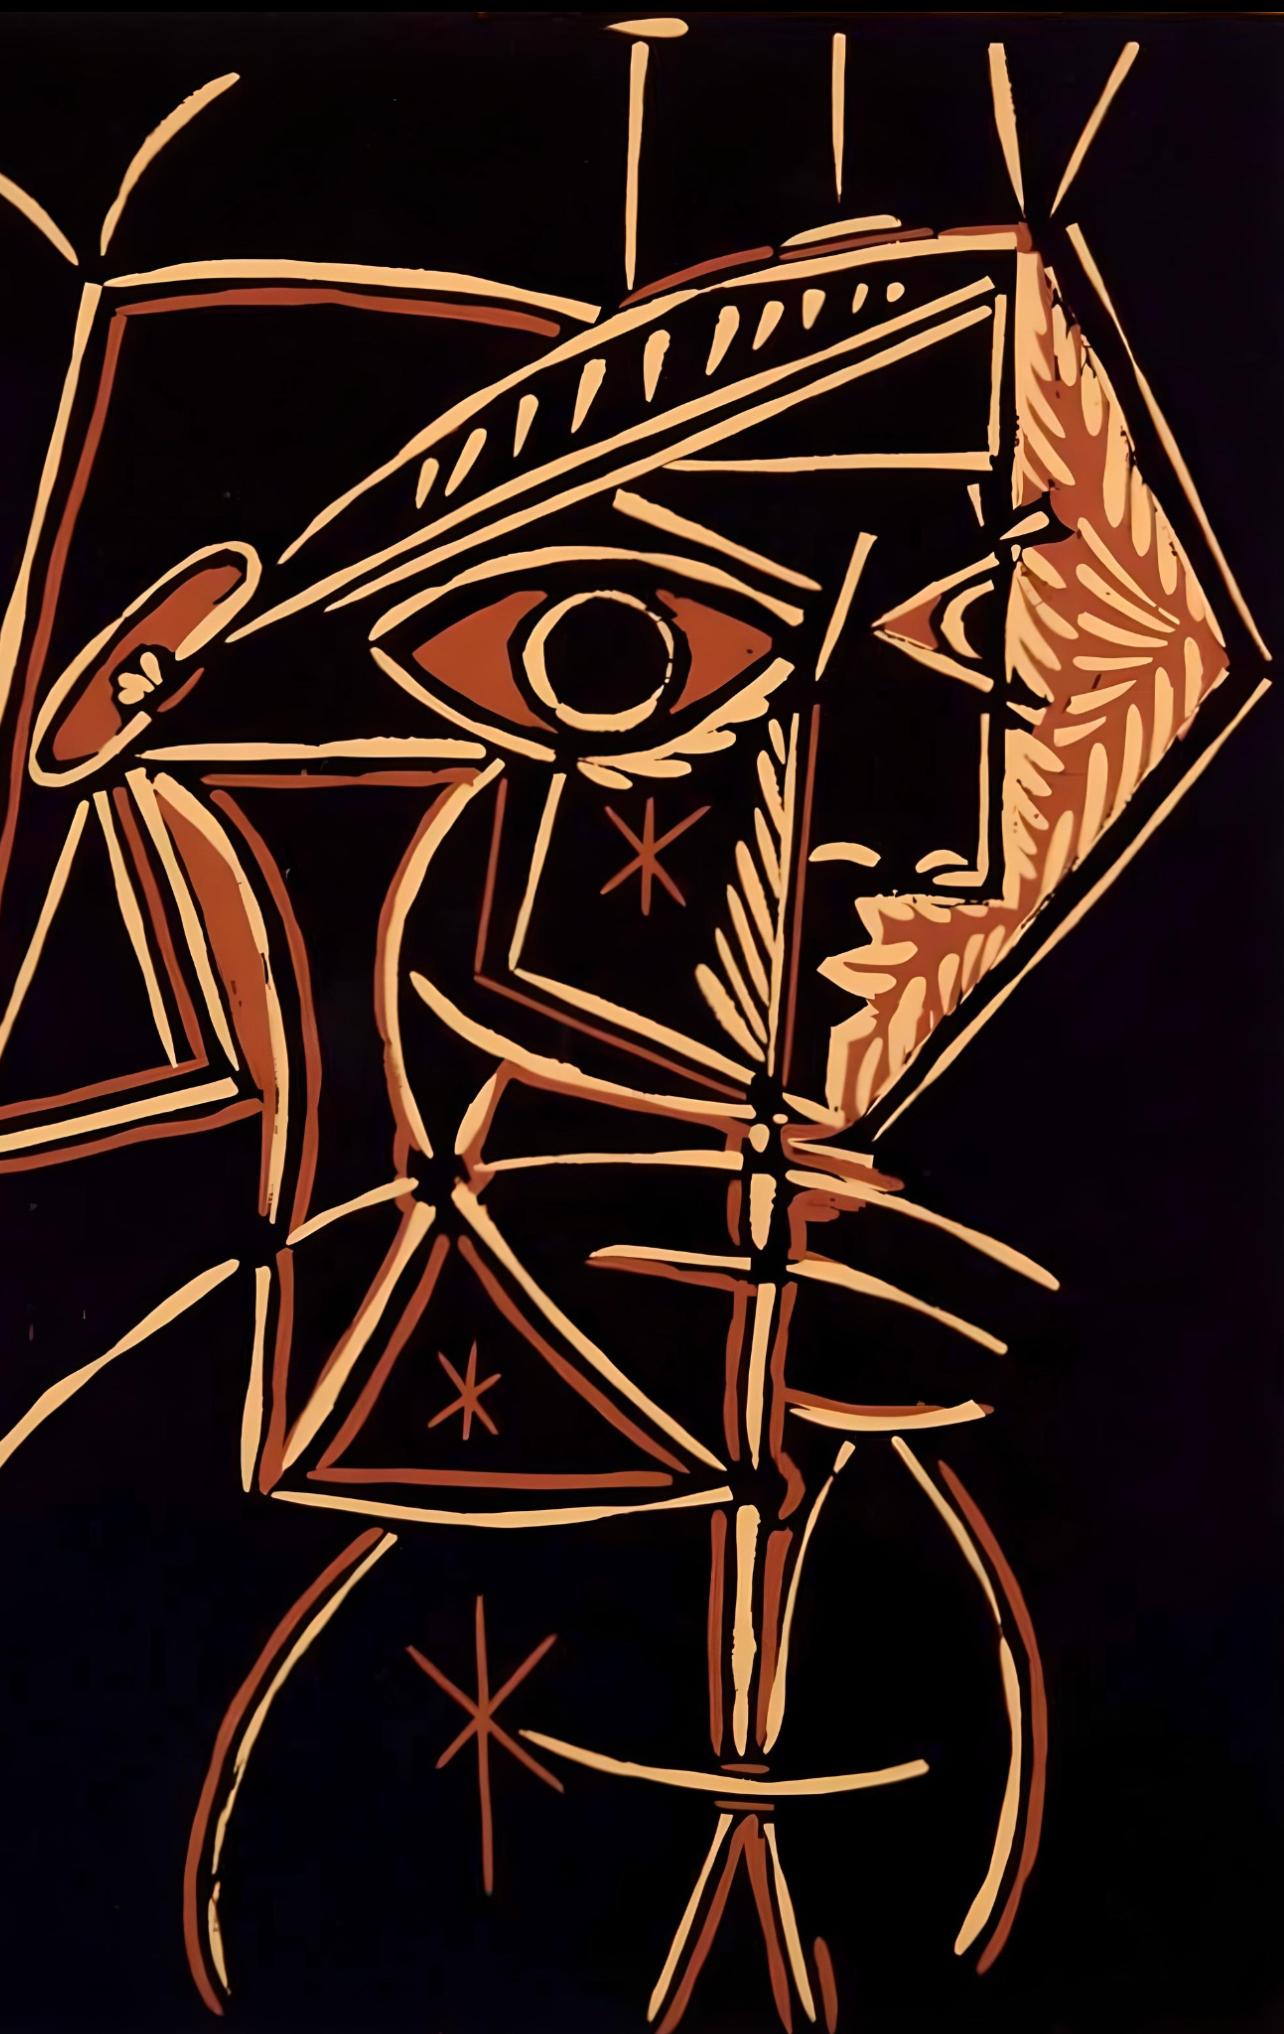 Picasso, Buste de femme : Jacqueline, Éditions Cercle d'Art (d'après) - Print de Pablo Picasso